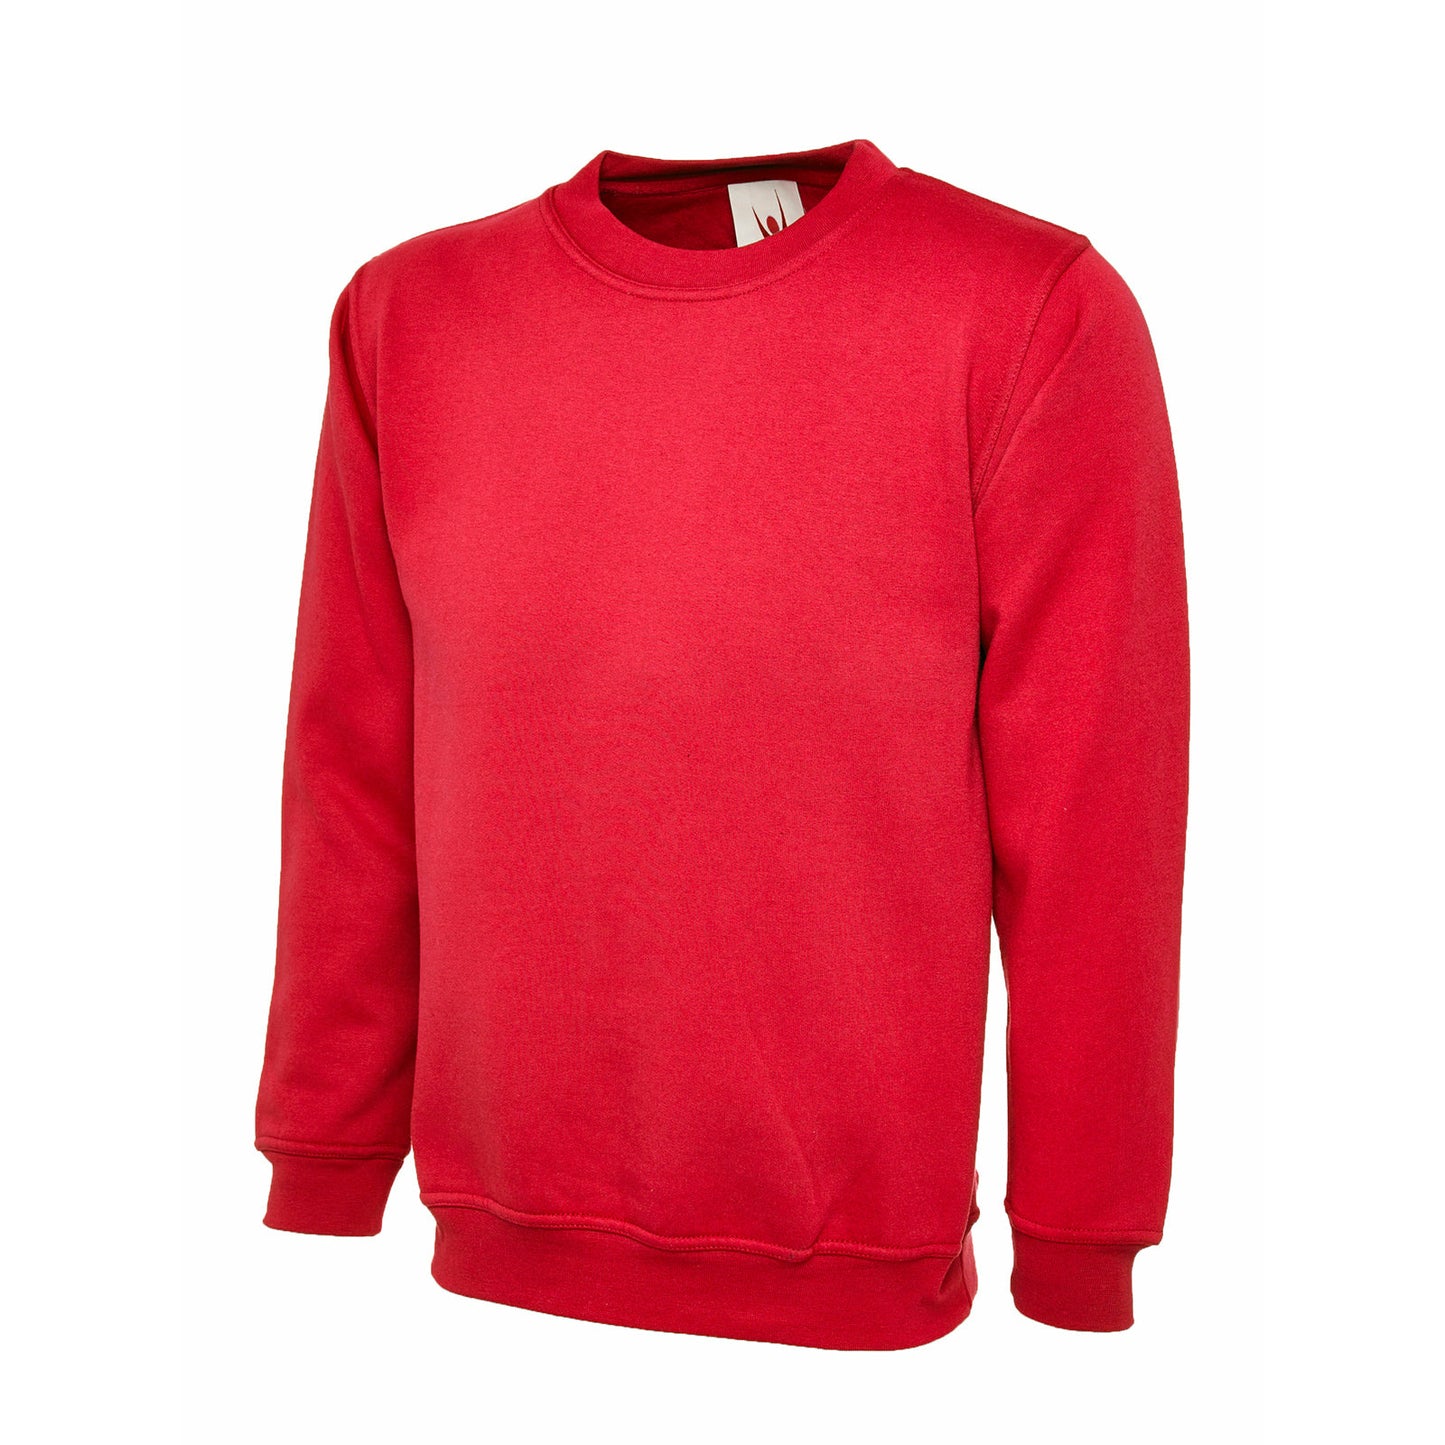 The UX Children's Sweatshirt - Red